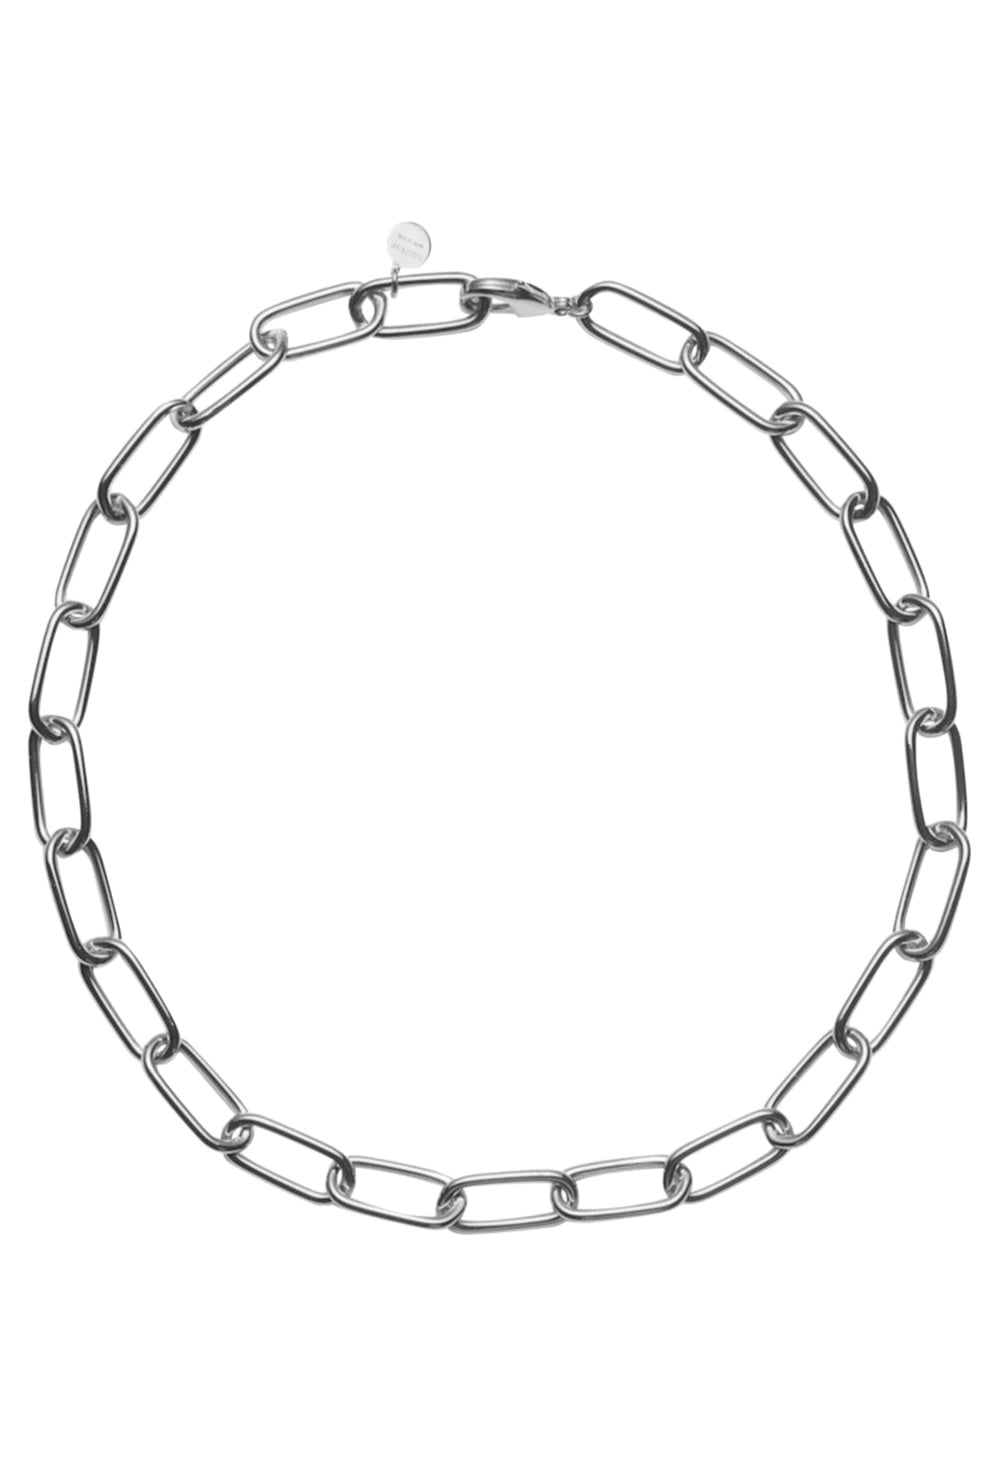 LINK WG necklace